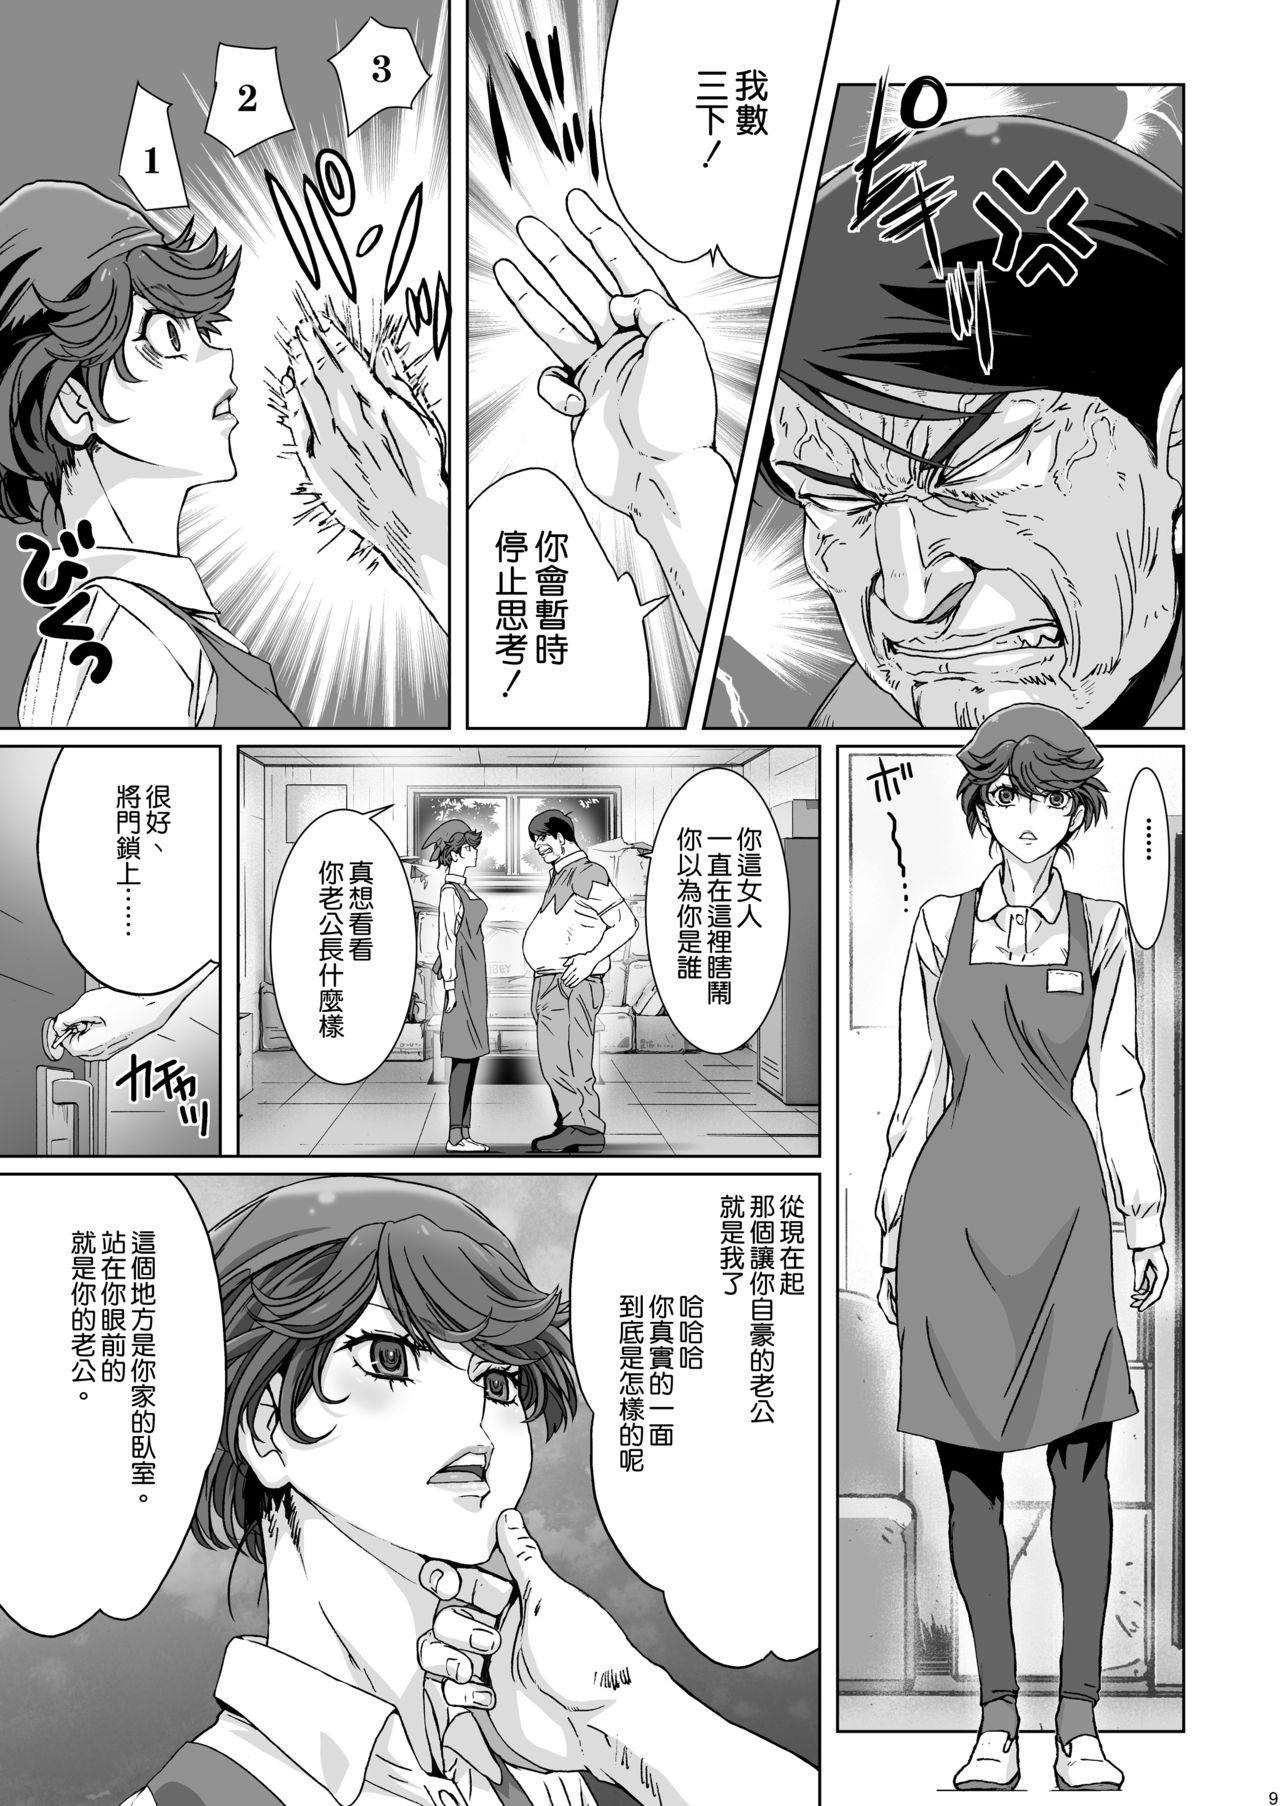 Smoking Kuso Mukatsuku Super no Hitozuma Tenin no Private o Saiminjutsu de Sarashite Miru. Gang - Page 9